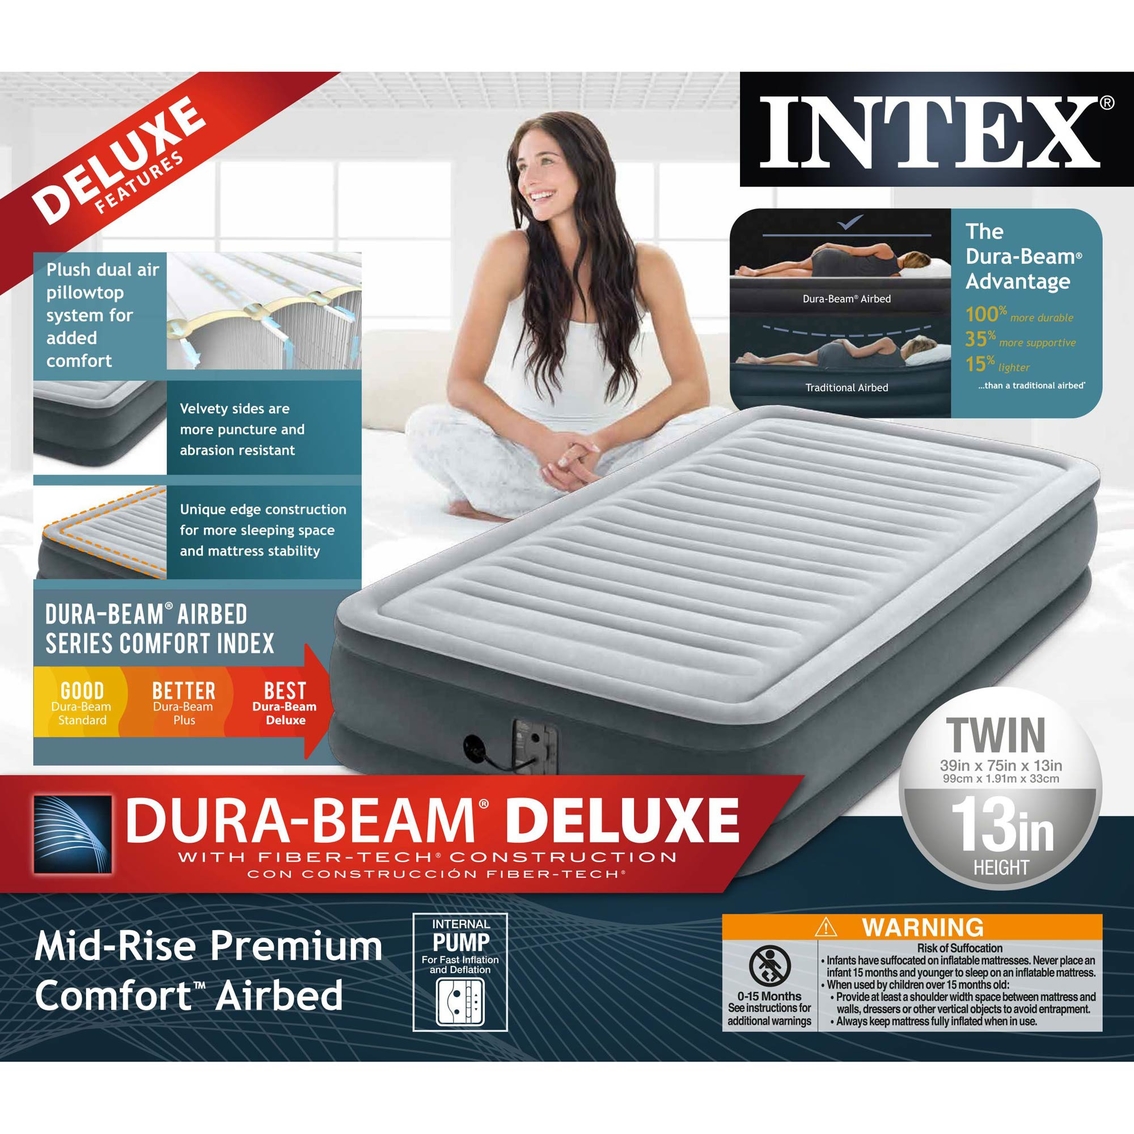 Intex Dura-Beam Mid-Rise Premium Comfort Airbed - Image 5 of 5